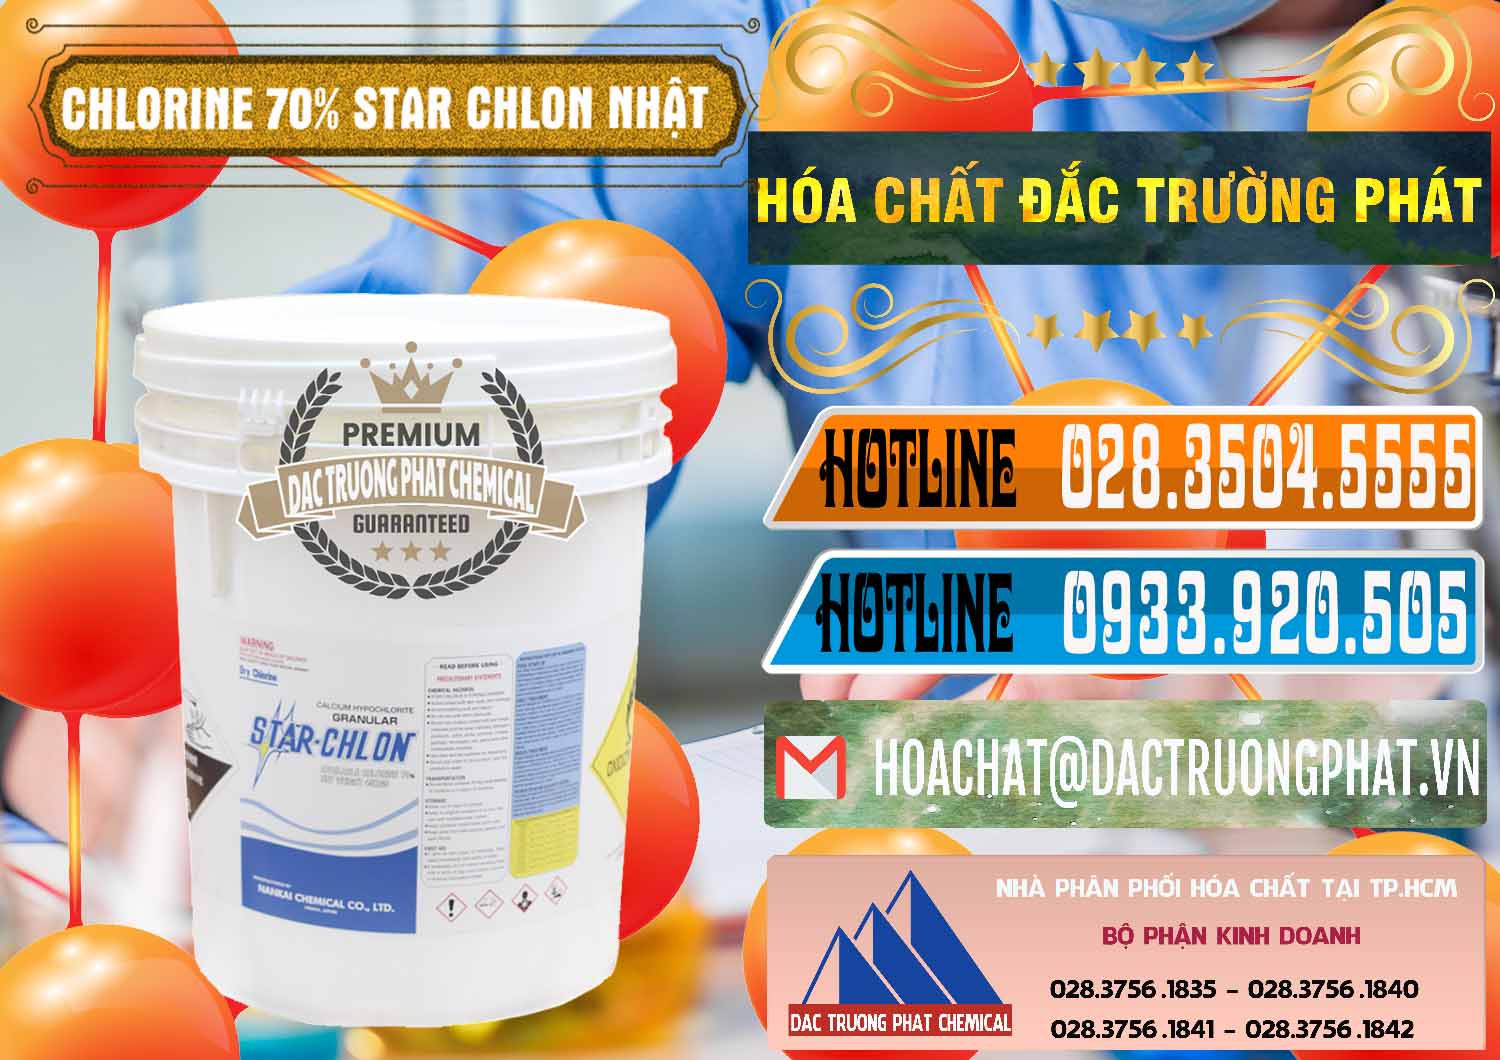 Cty bán - cung ứng Clorin – Chlorine 70% Star Chlon Nhật Bản Japan - 0243 - Công ty chuyên phân phối ( bán ) hóa chất tại TP.HCM - stmp.net